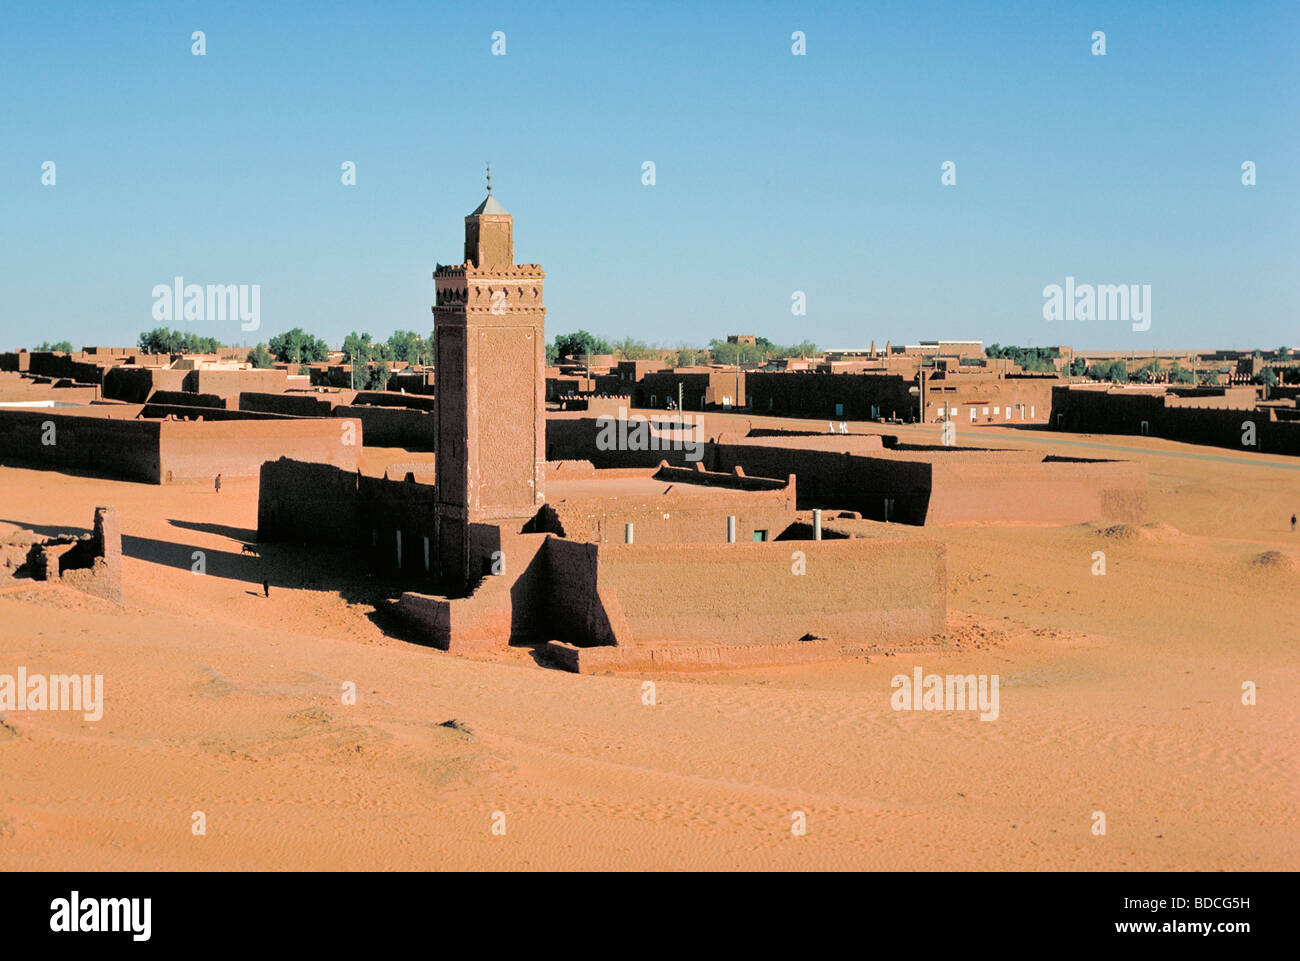 Résultat de recherche d'images pour "In Salah, Algérie"